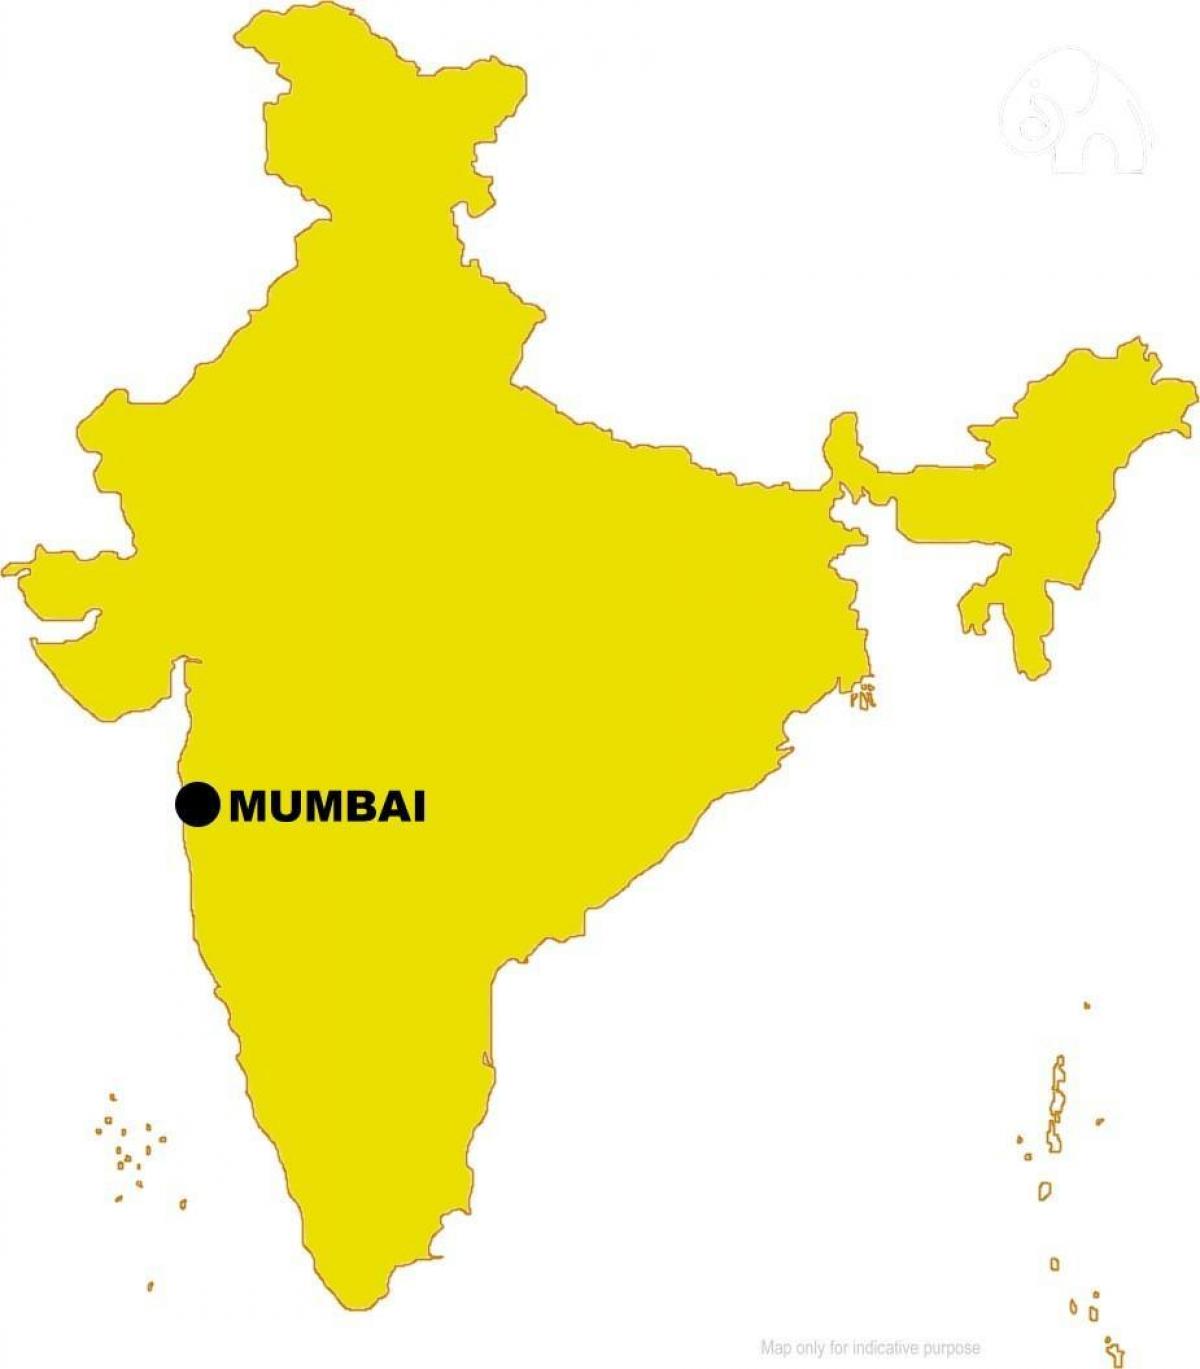 Mumbai in die kaart